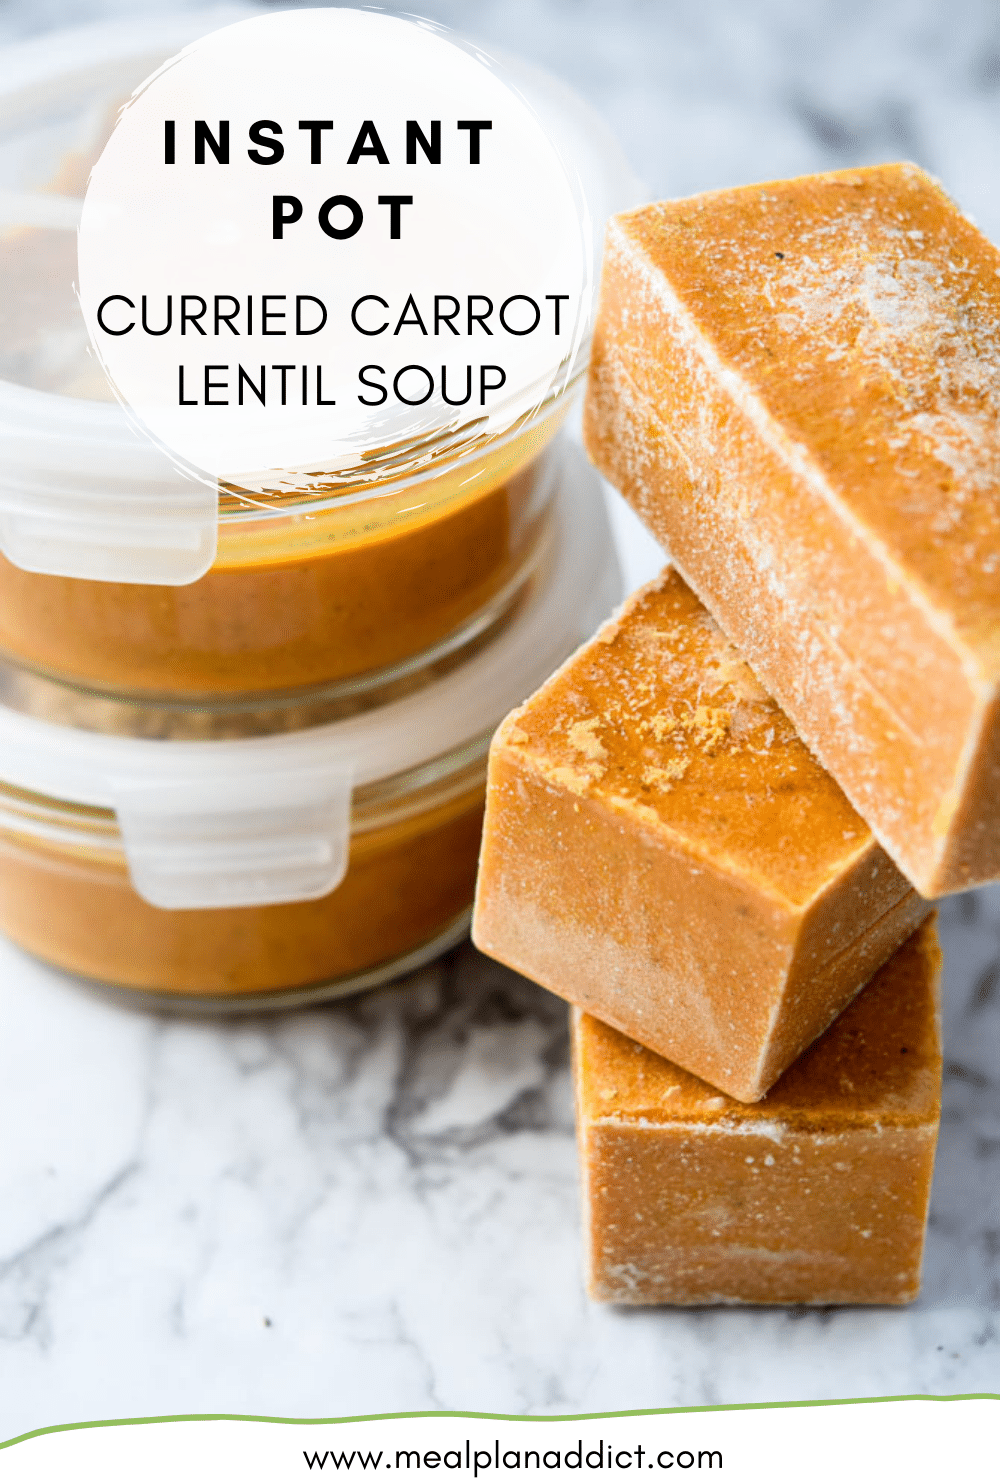 Instant Pot Curried Carrot Lentil Soup